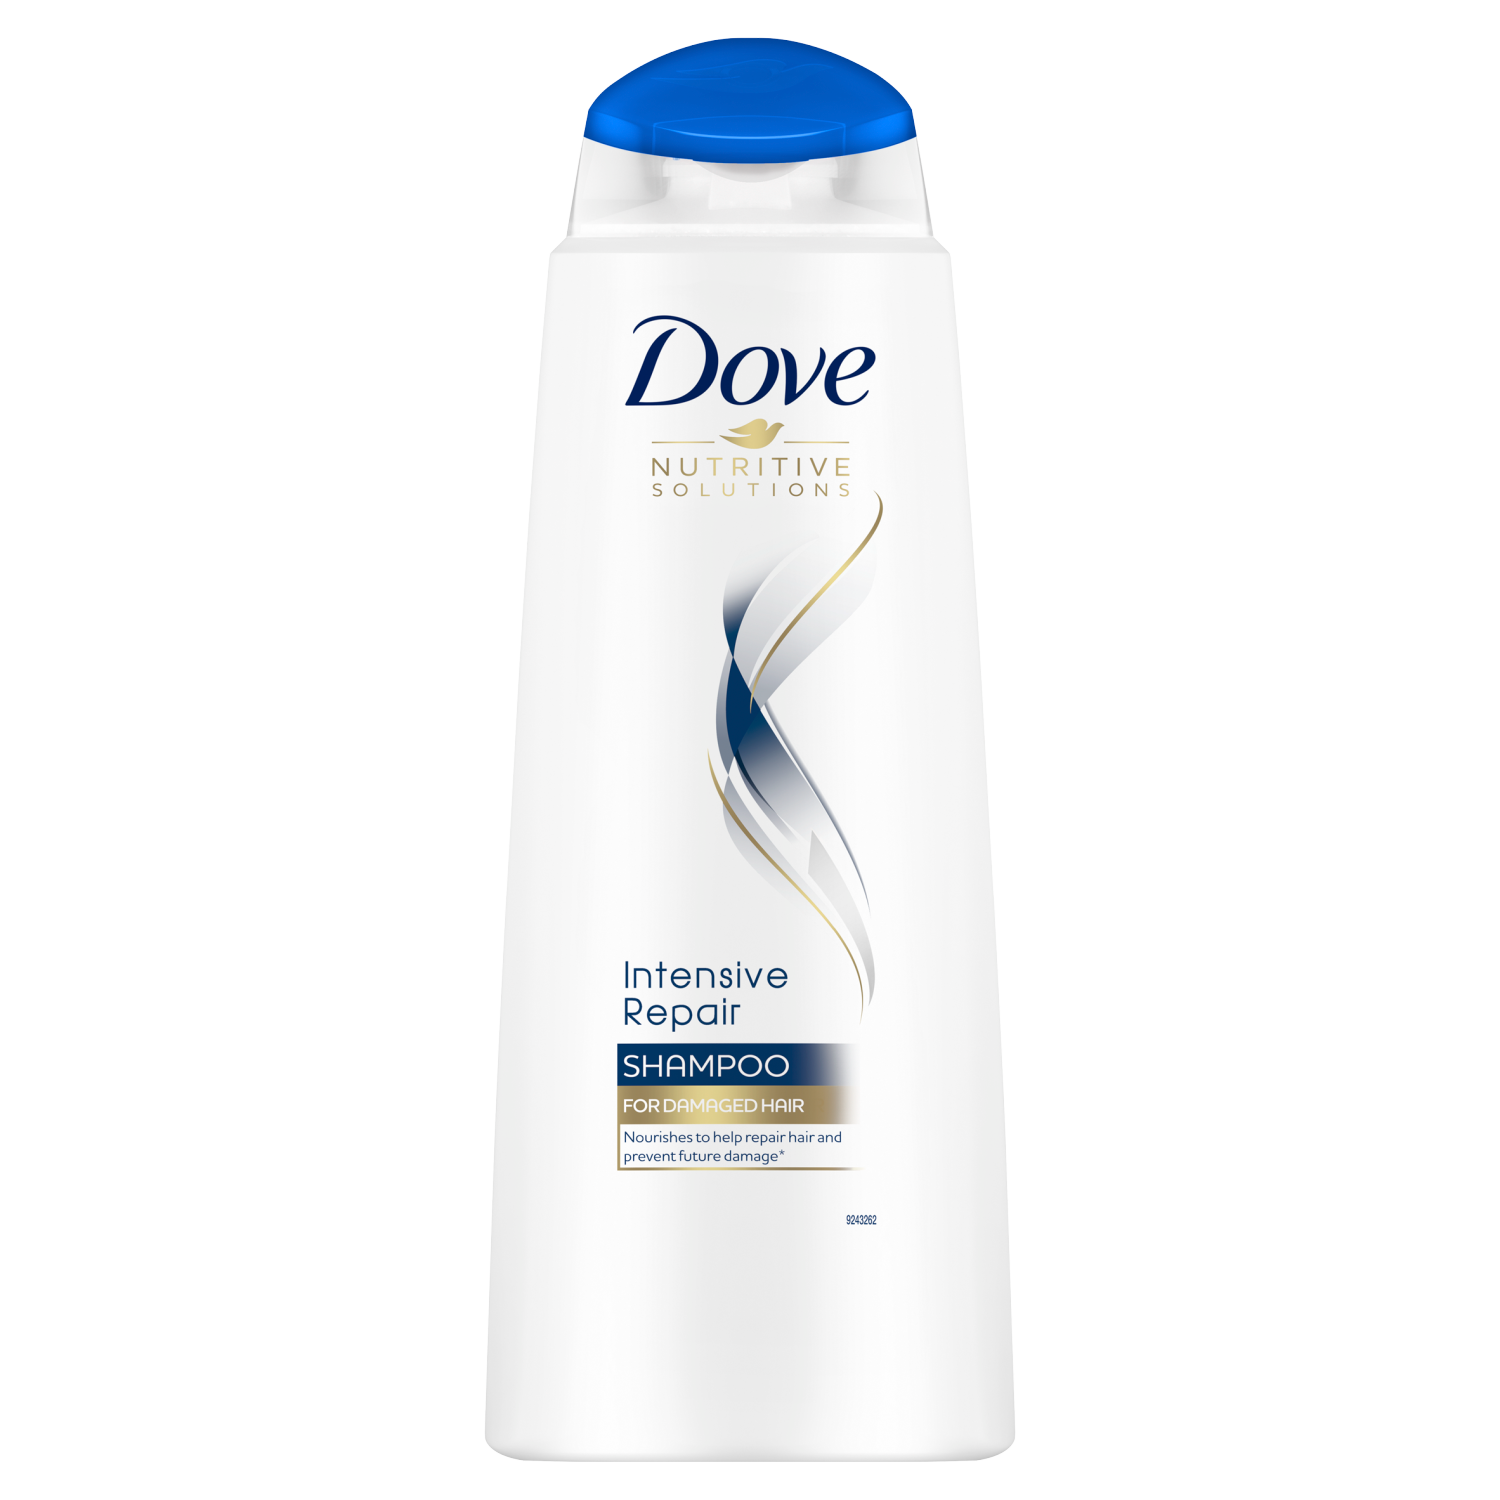 Dove Nutritive Solutions Intensive Repair шампунь для интенсивного восстановления волос, 400 мл dove intensive repair шампунь 400 ml